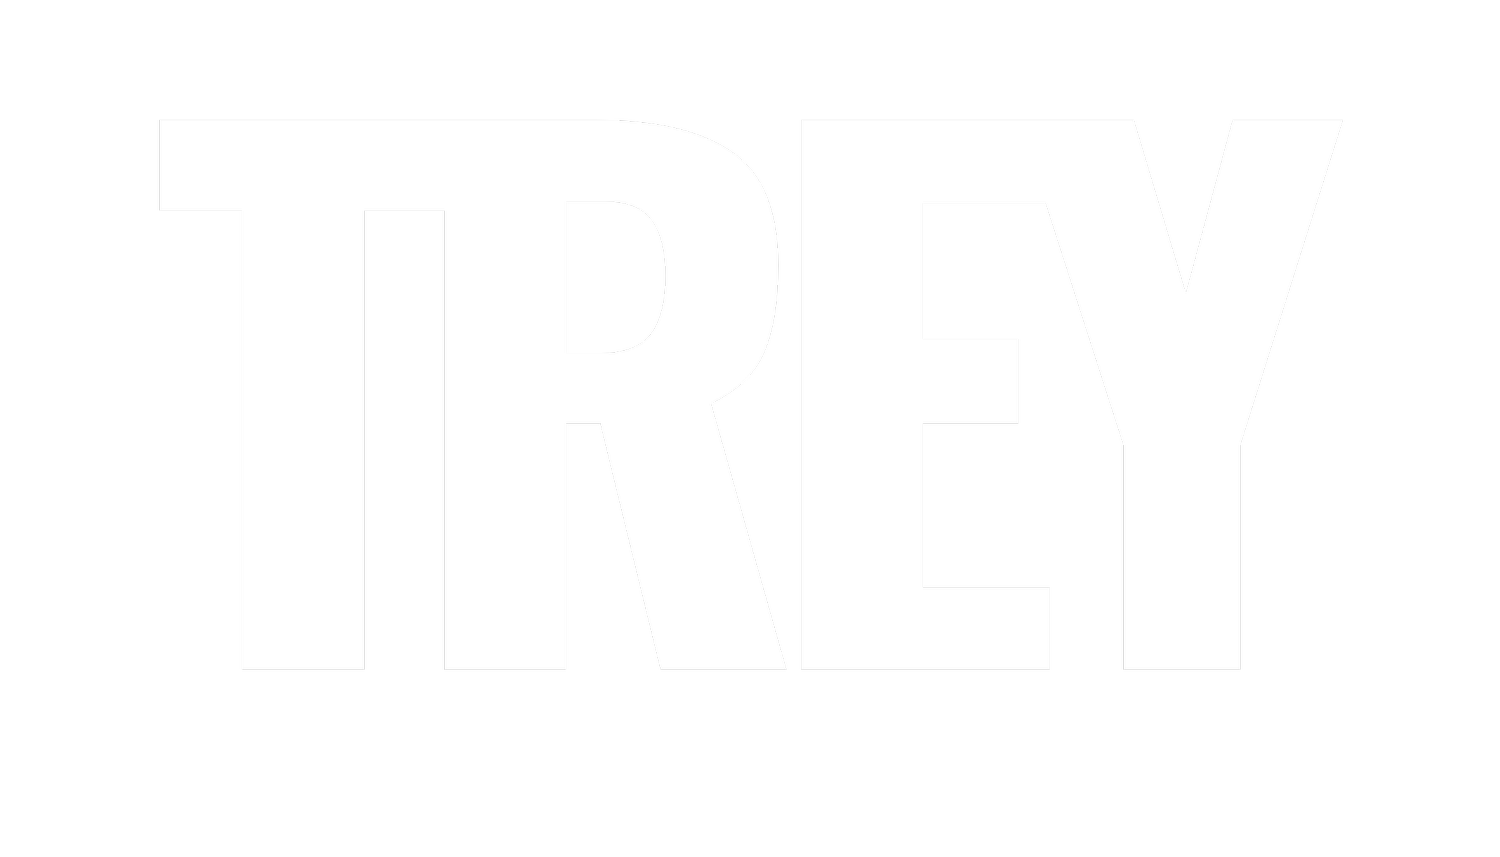 TREY